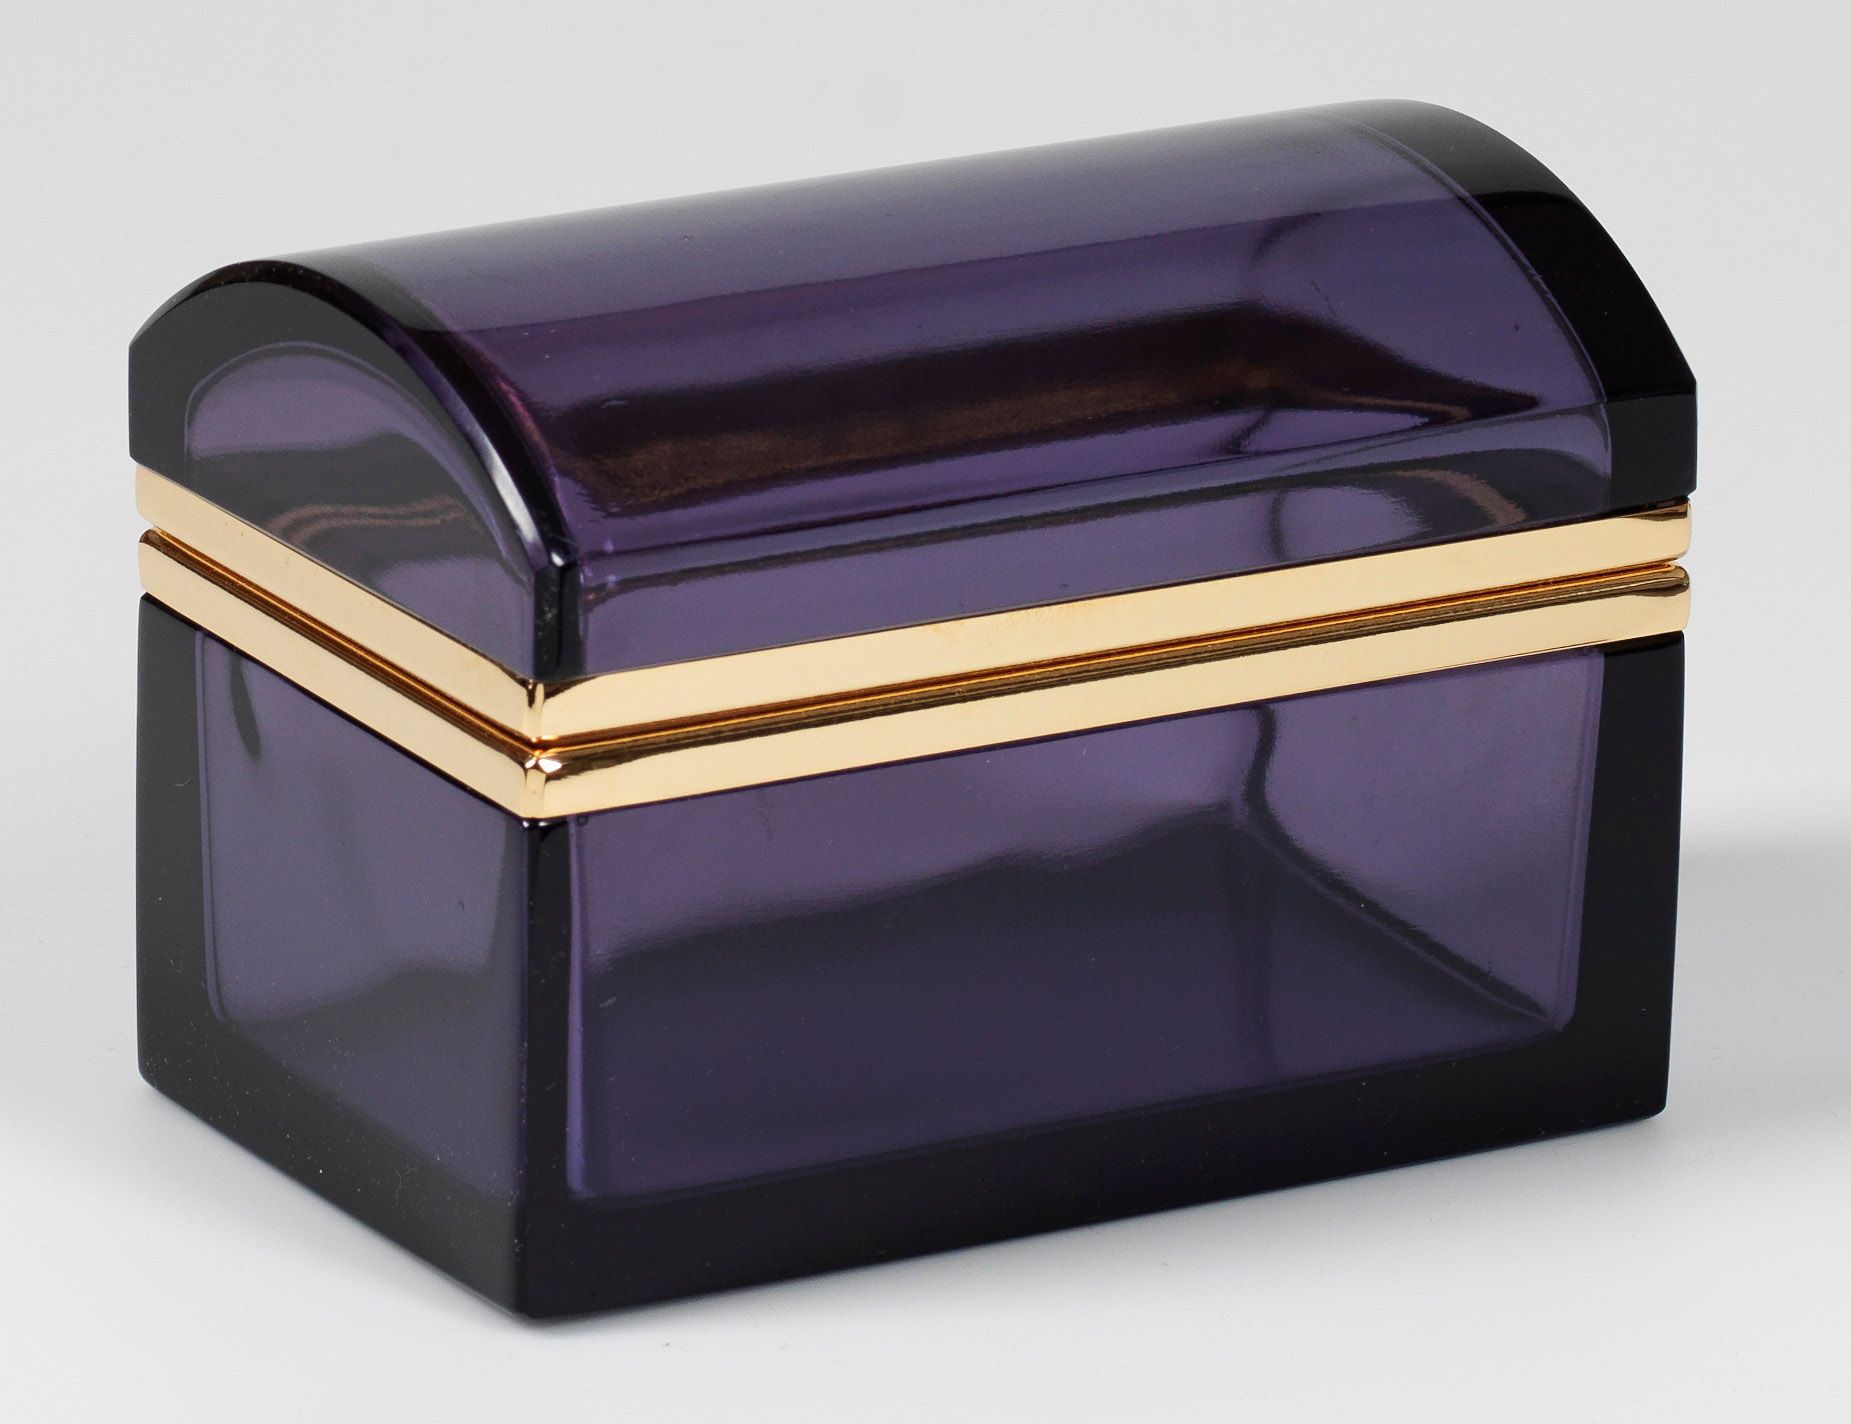 Null 装饰艺术盒 长方形柜子，带圆形盖子。经切割和抛光的深紫色透明玻璃。黄铜铰链座。高 9.8 厘米、长 13.5 厘米 x 宽 8.5 厘米。
一个法国装&hellip;